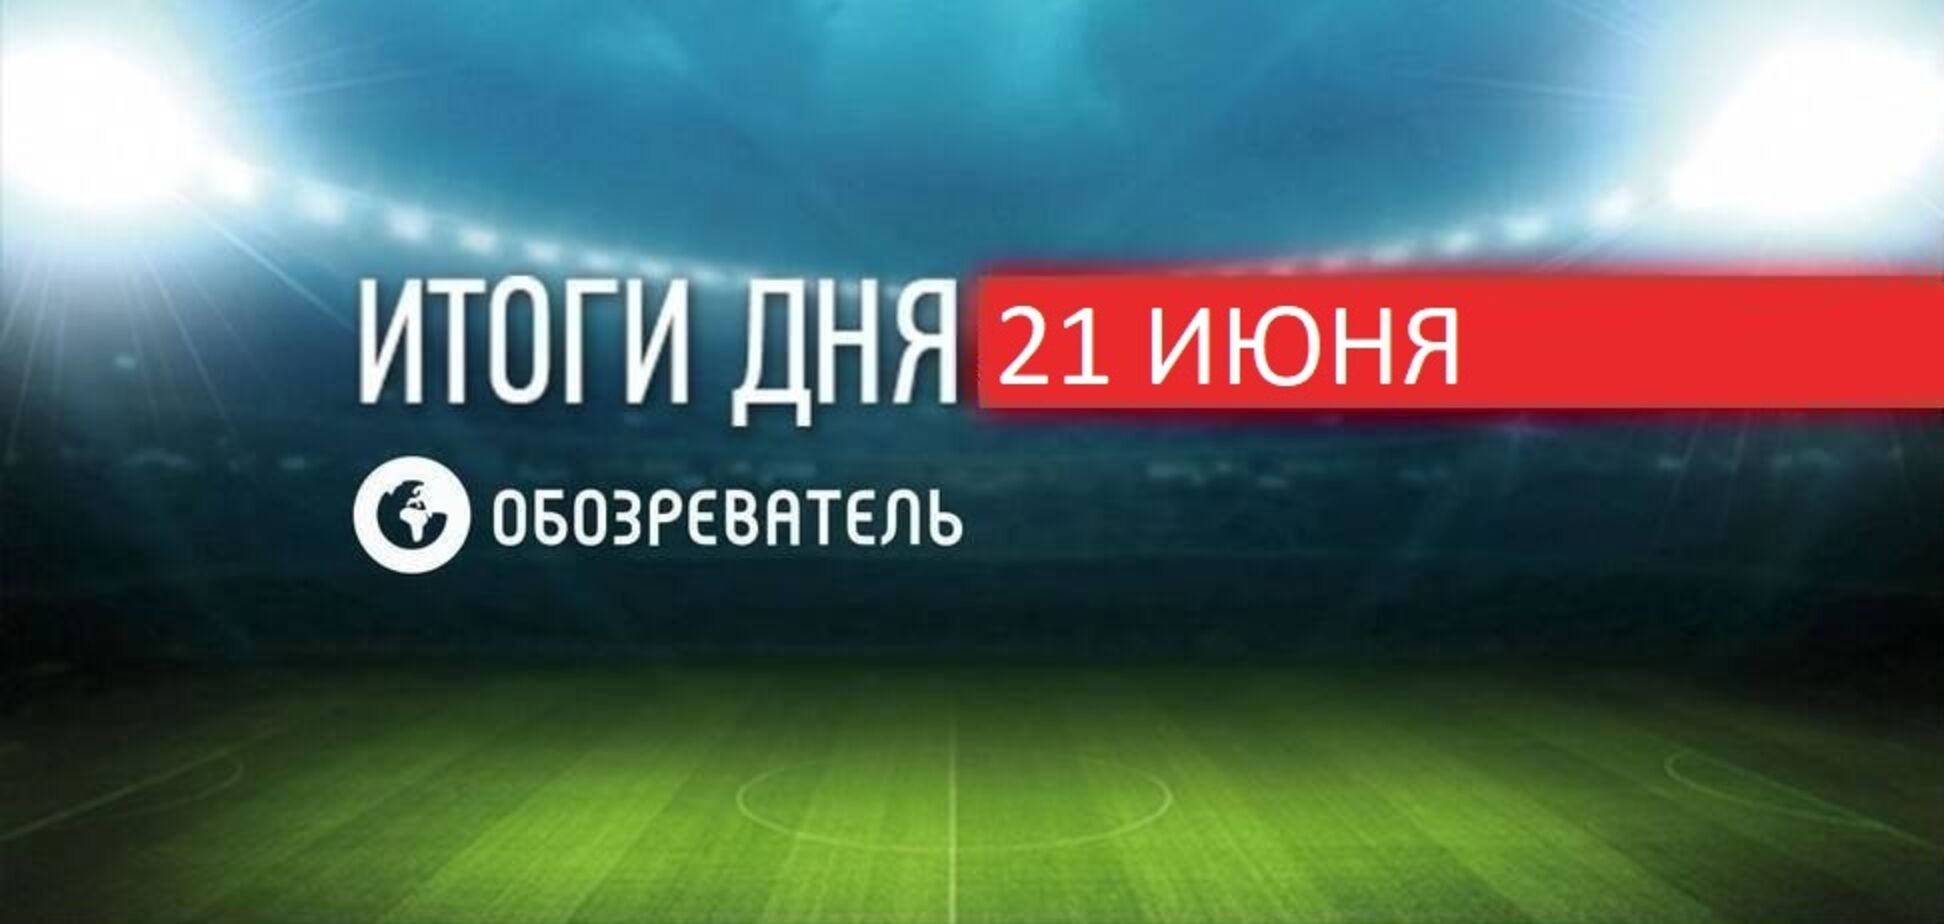 Україна програла Австрії, Росія вилетіла з Євро-2020: новини спорту 21 червня